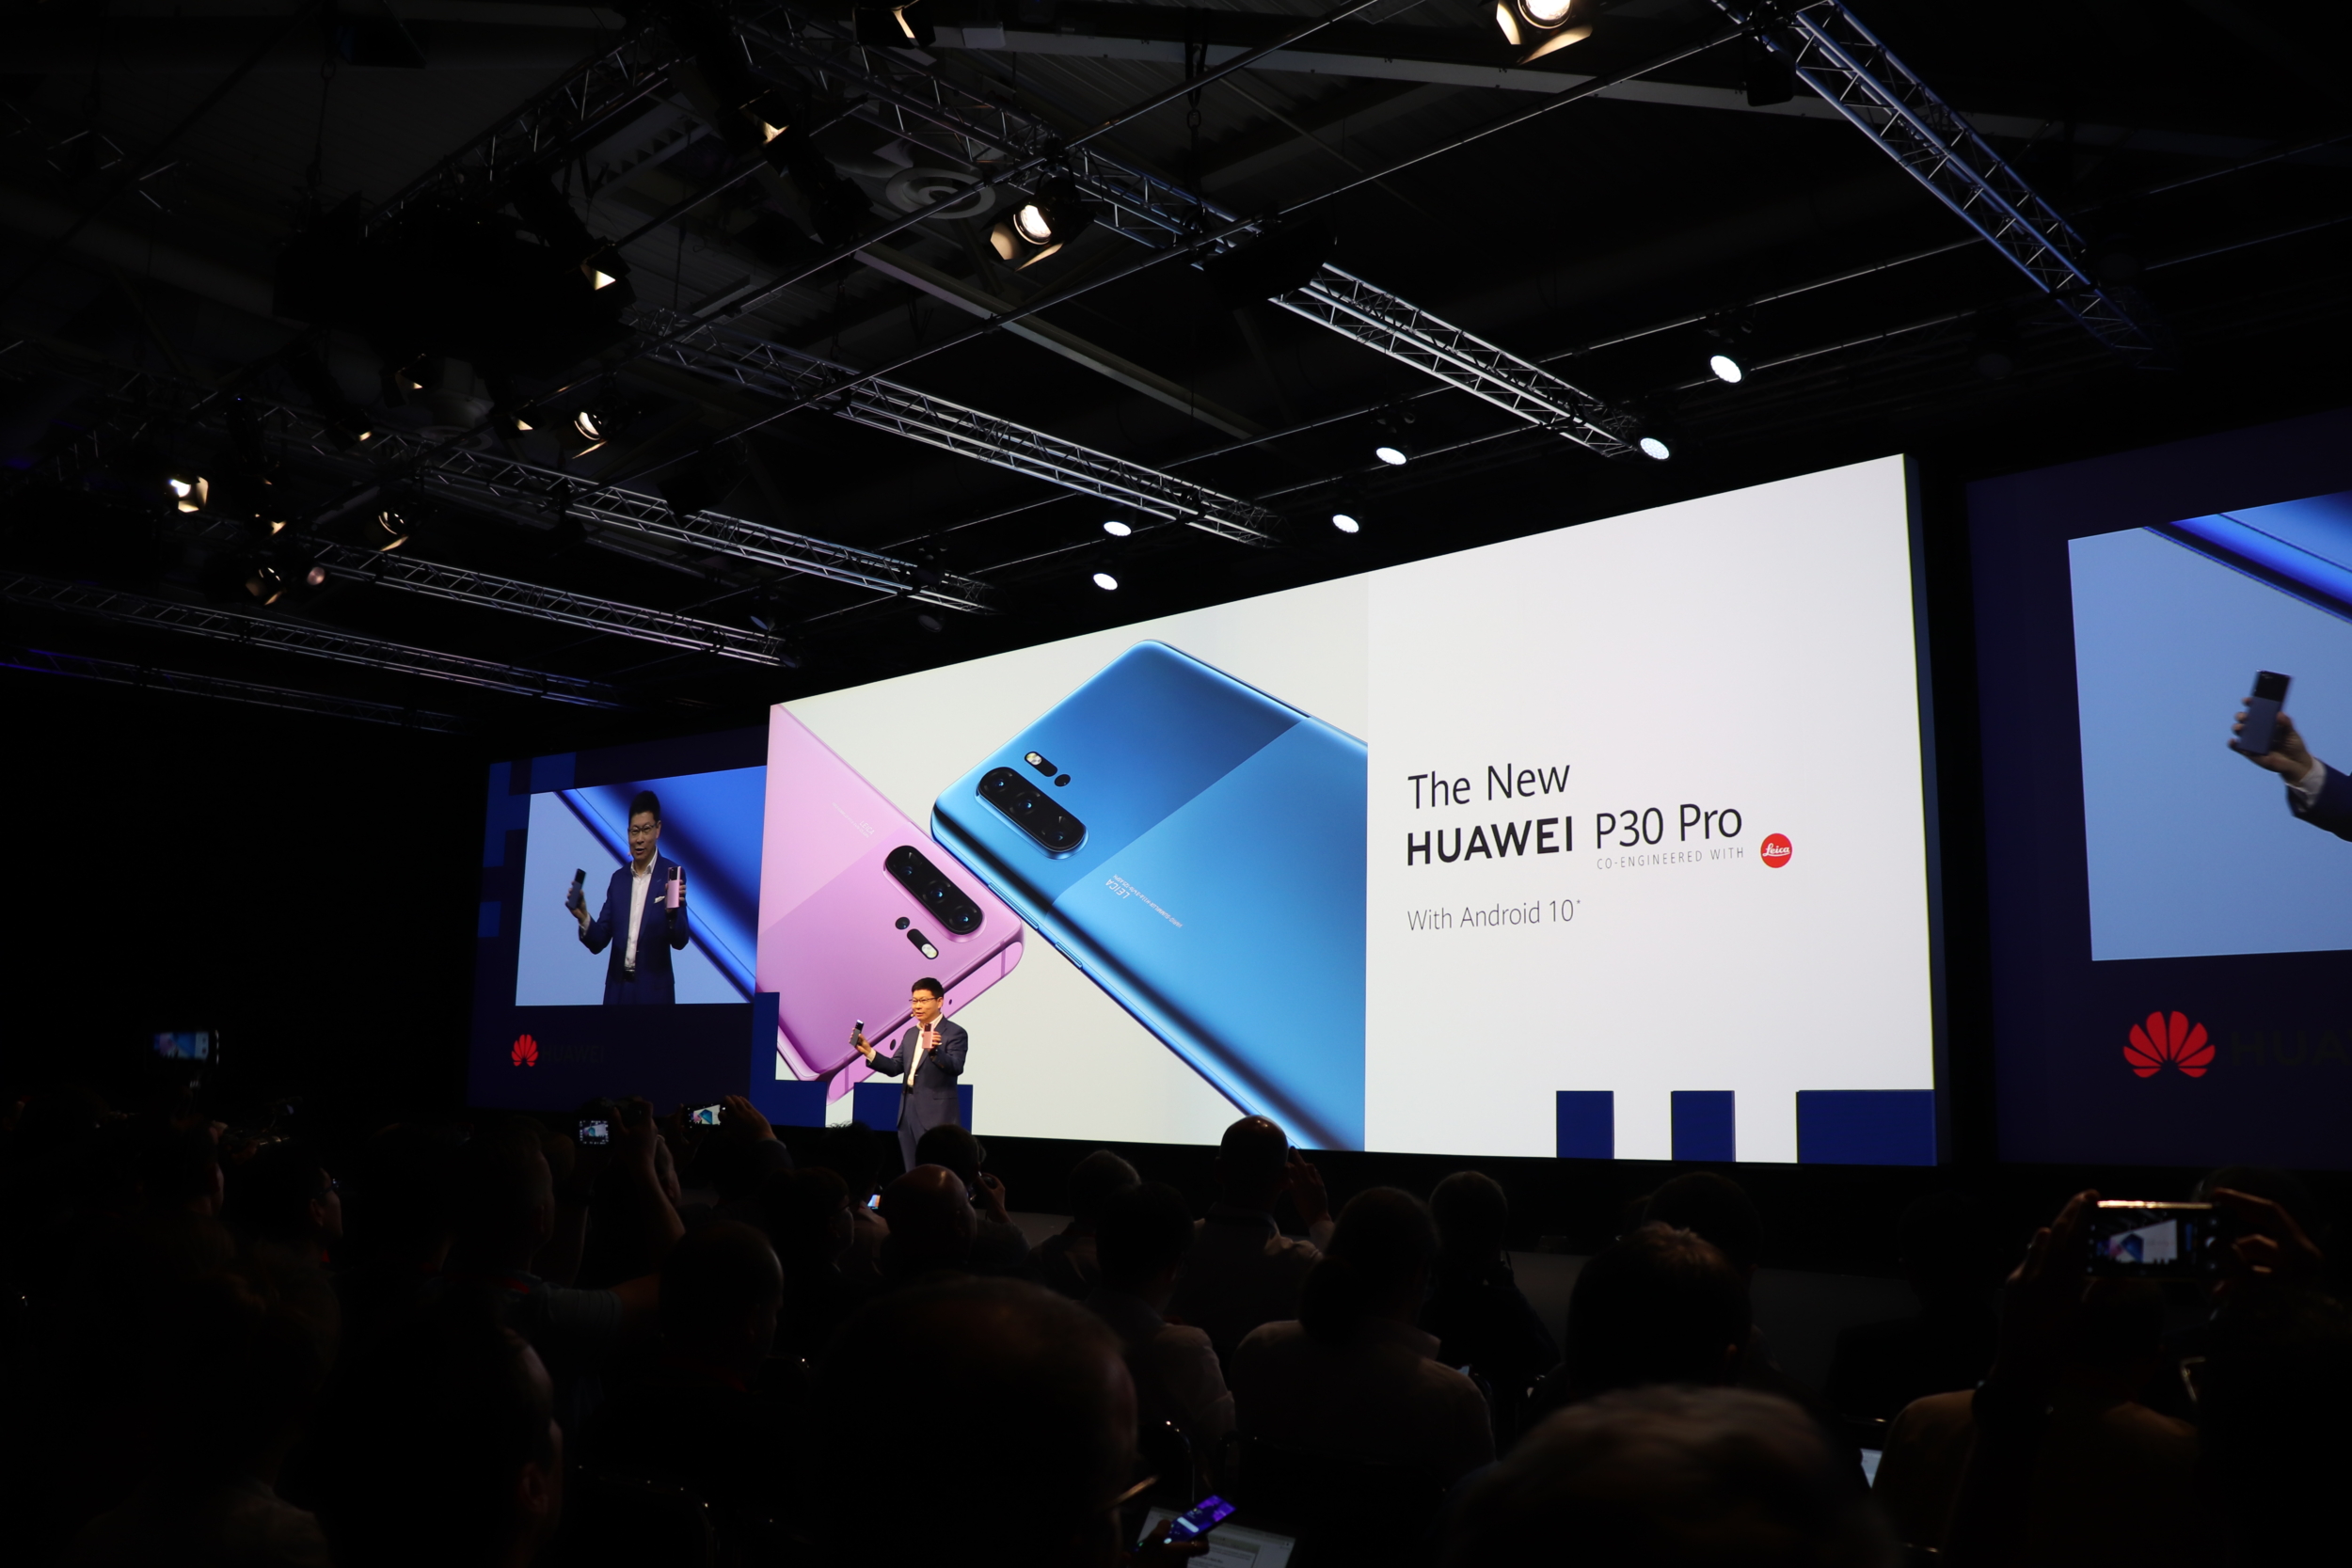 Huawei se pochlubil novými P30 Pro s Androidem 10 [IFA]